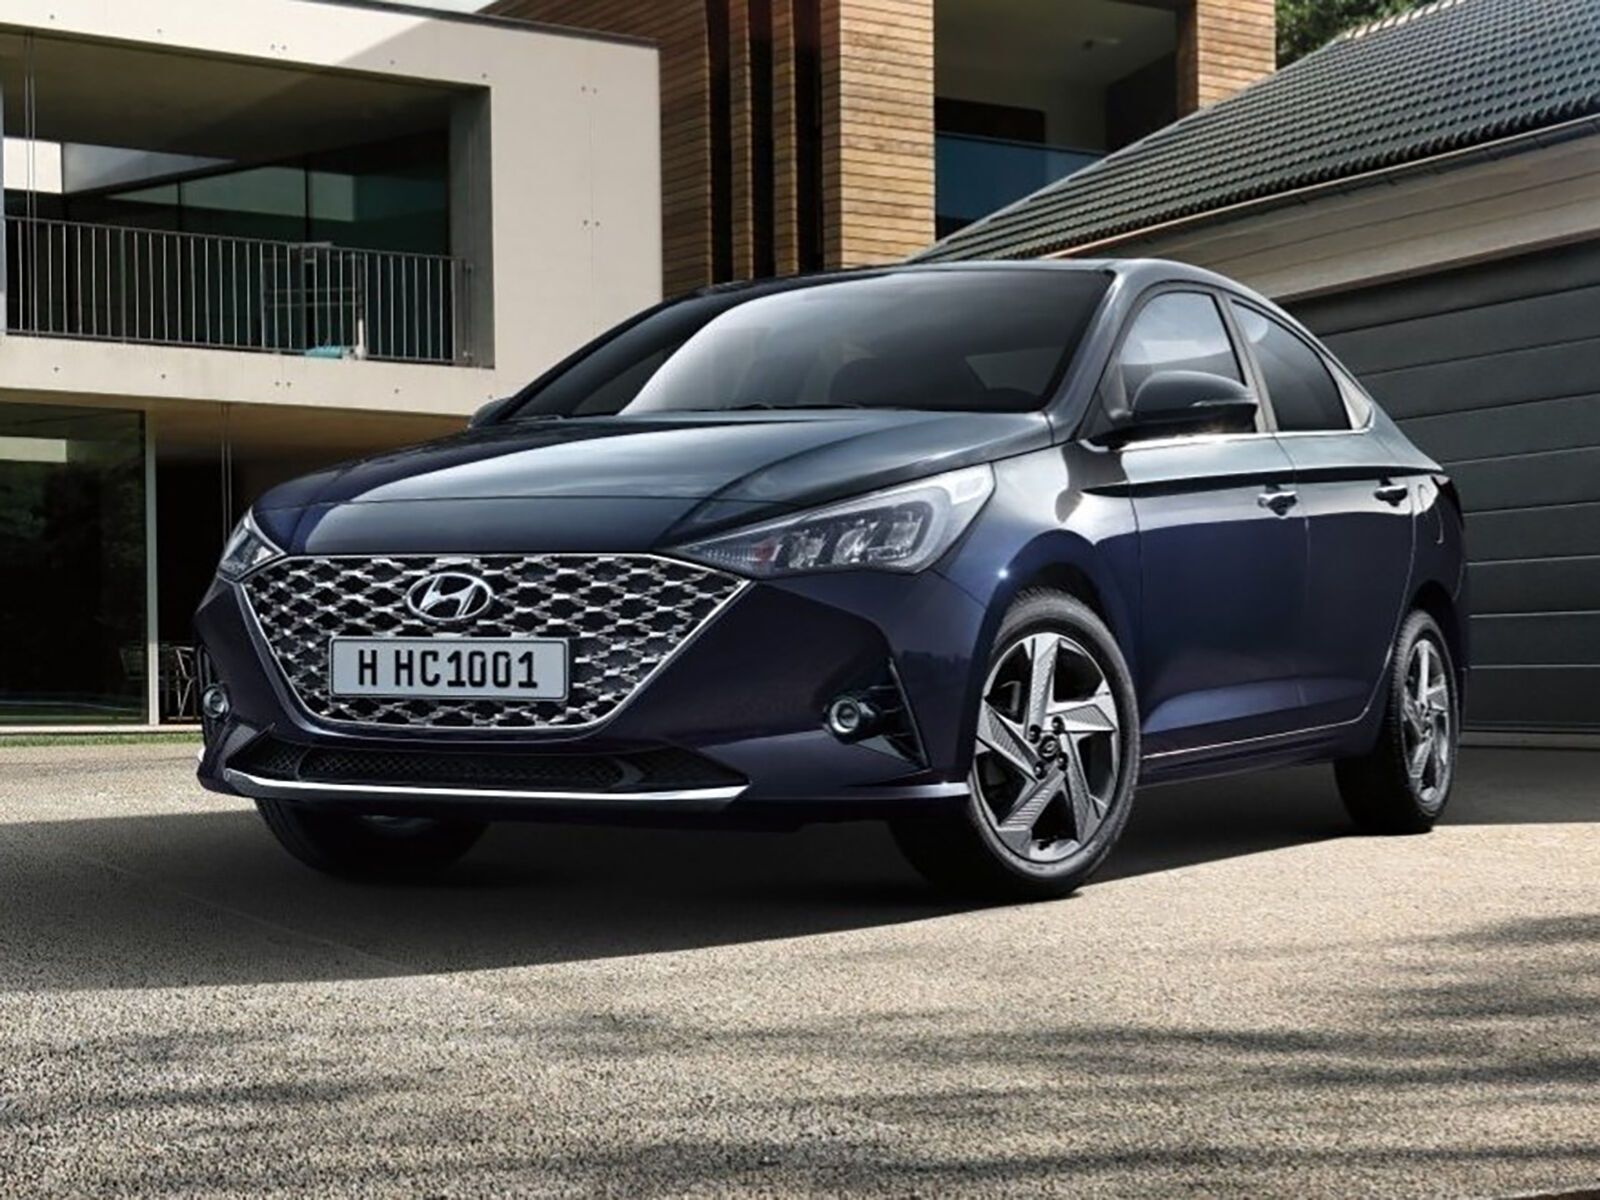 Hyundai Accent – досить дорогий автомобіль для свого сегменту, та зовні машина виглядає ще дорожче